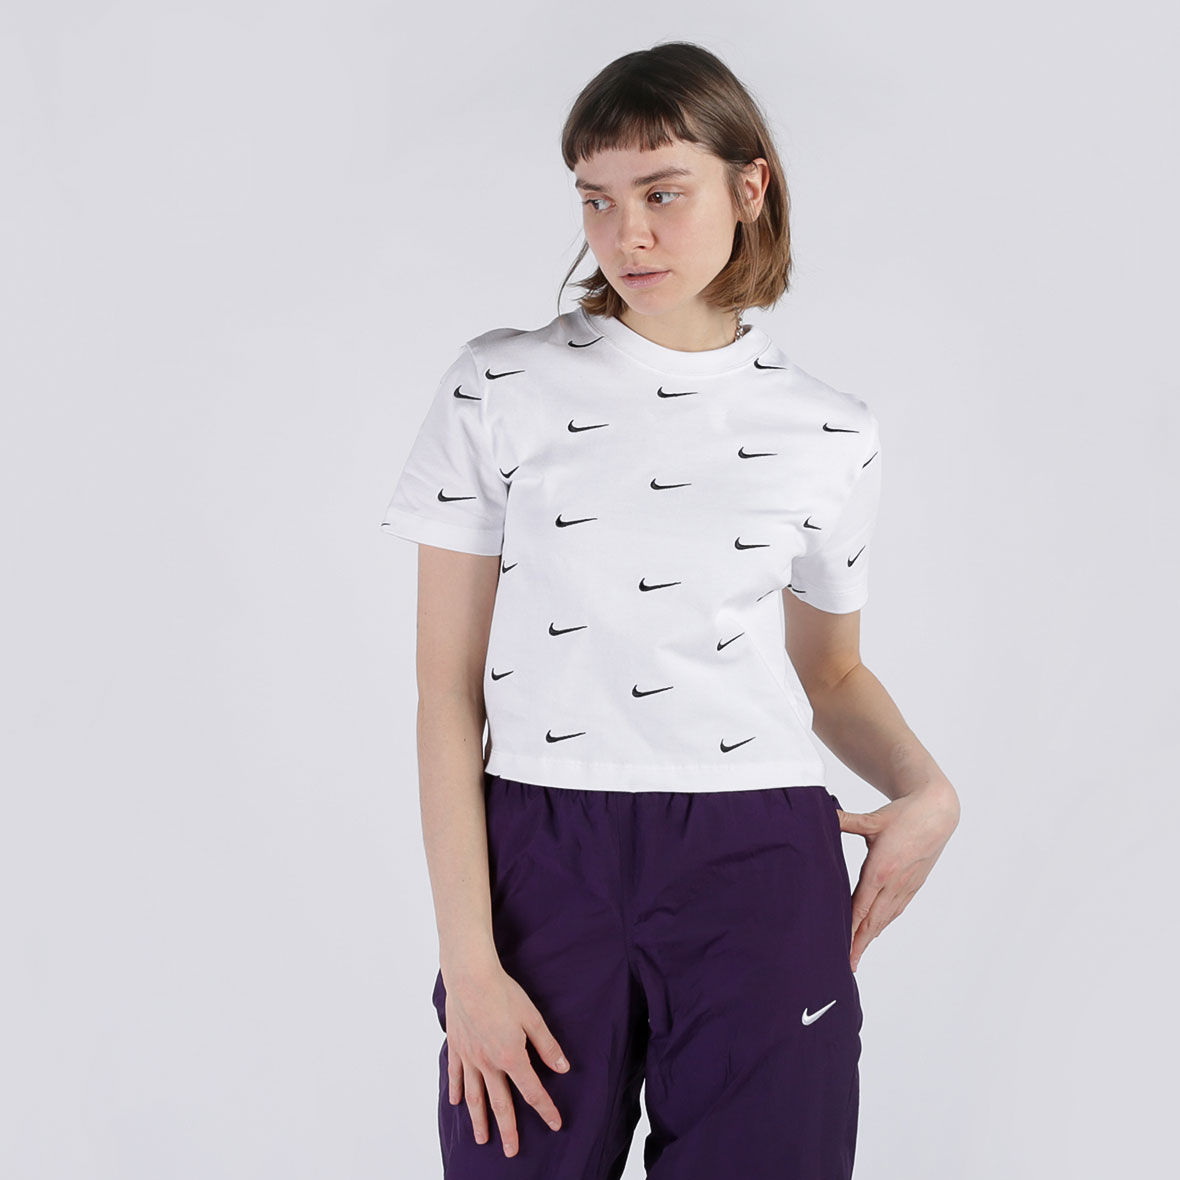 женская белая футболка Nike Swoosh Logo T-Shirt CK4092-100 - цена, описание, фото 1